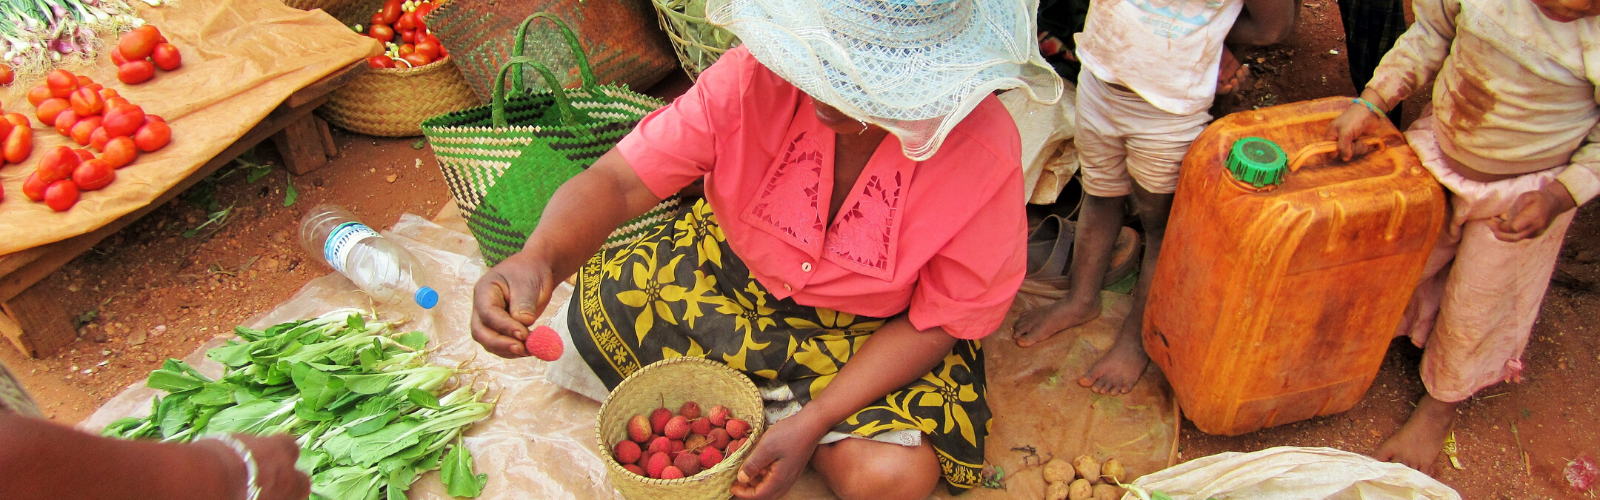 La cuisine traditionnelle à Madagascar Double Sens